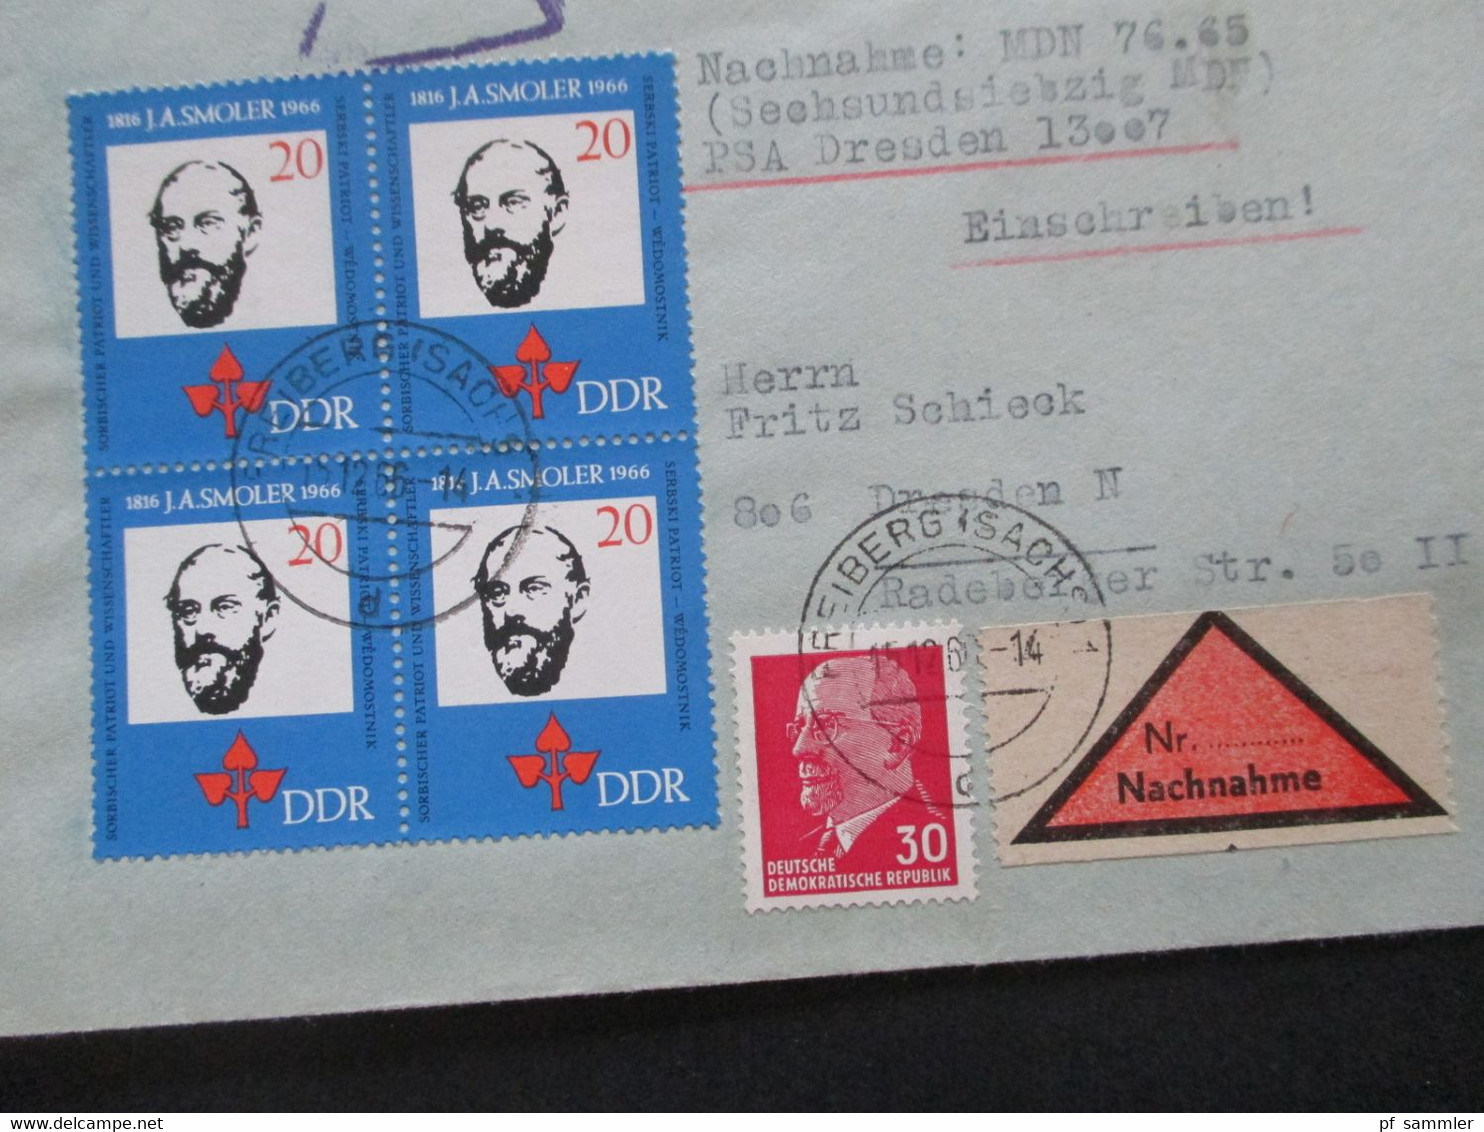 DDR 1960 / 70er Jahre Insgesamt 14 Belege / Nachnahme / Einschreiben! Schöne Frankaturen / Auch Einheiten! - Covers & Documents